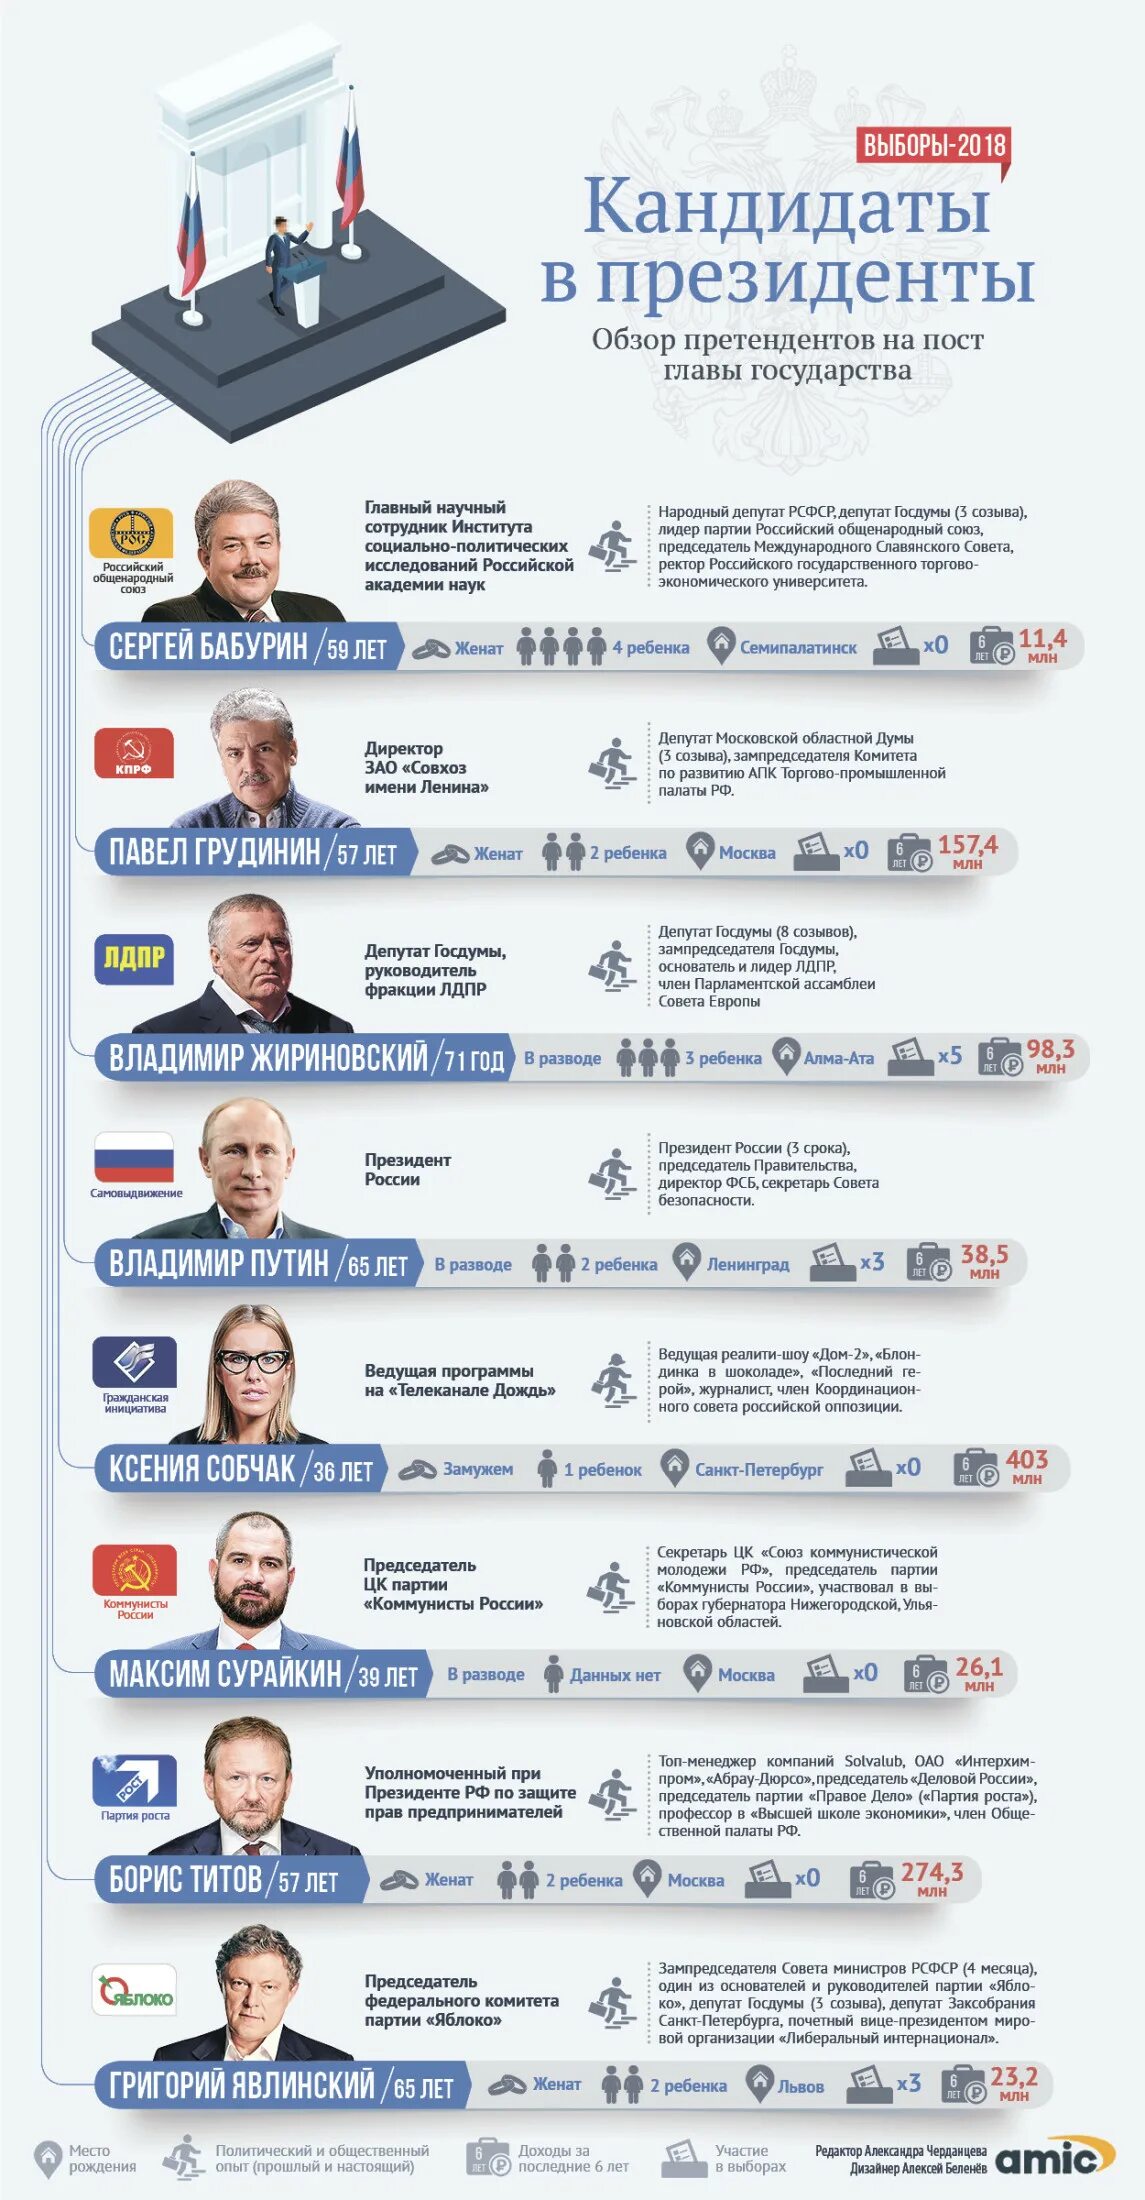 Какие проценты президентов. Выборы президента России 2018 кандидаты.